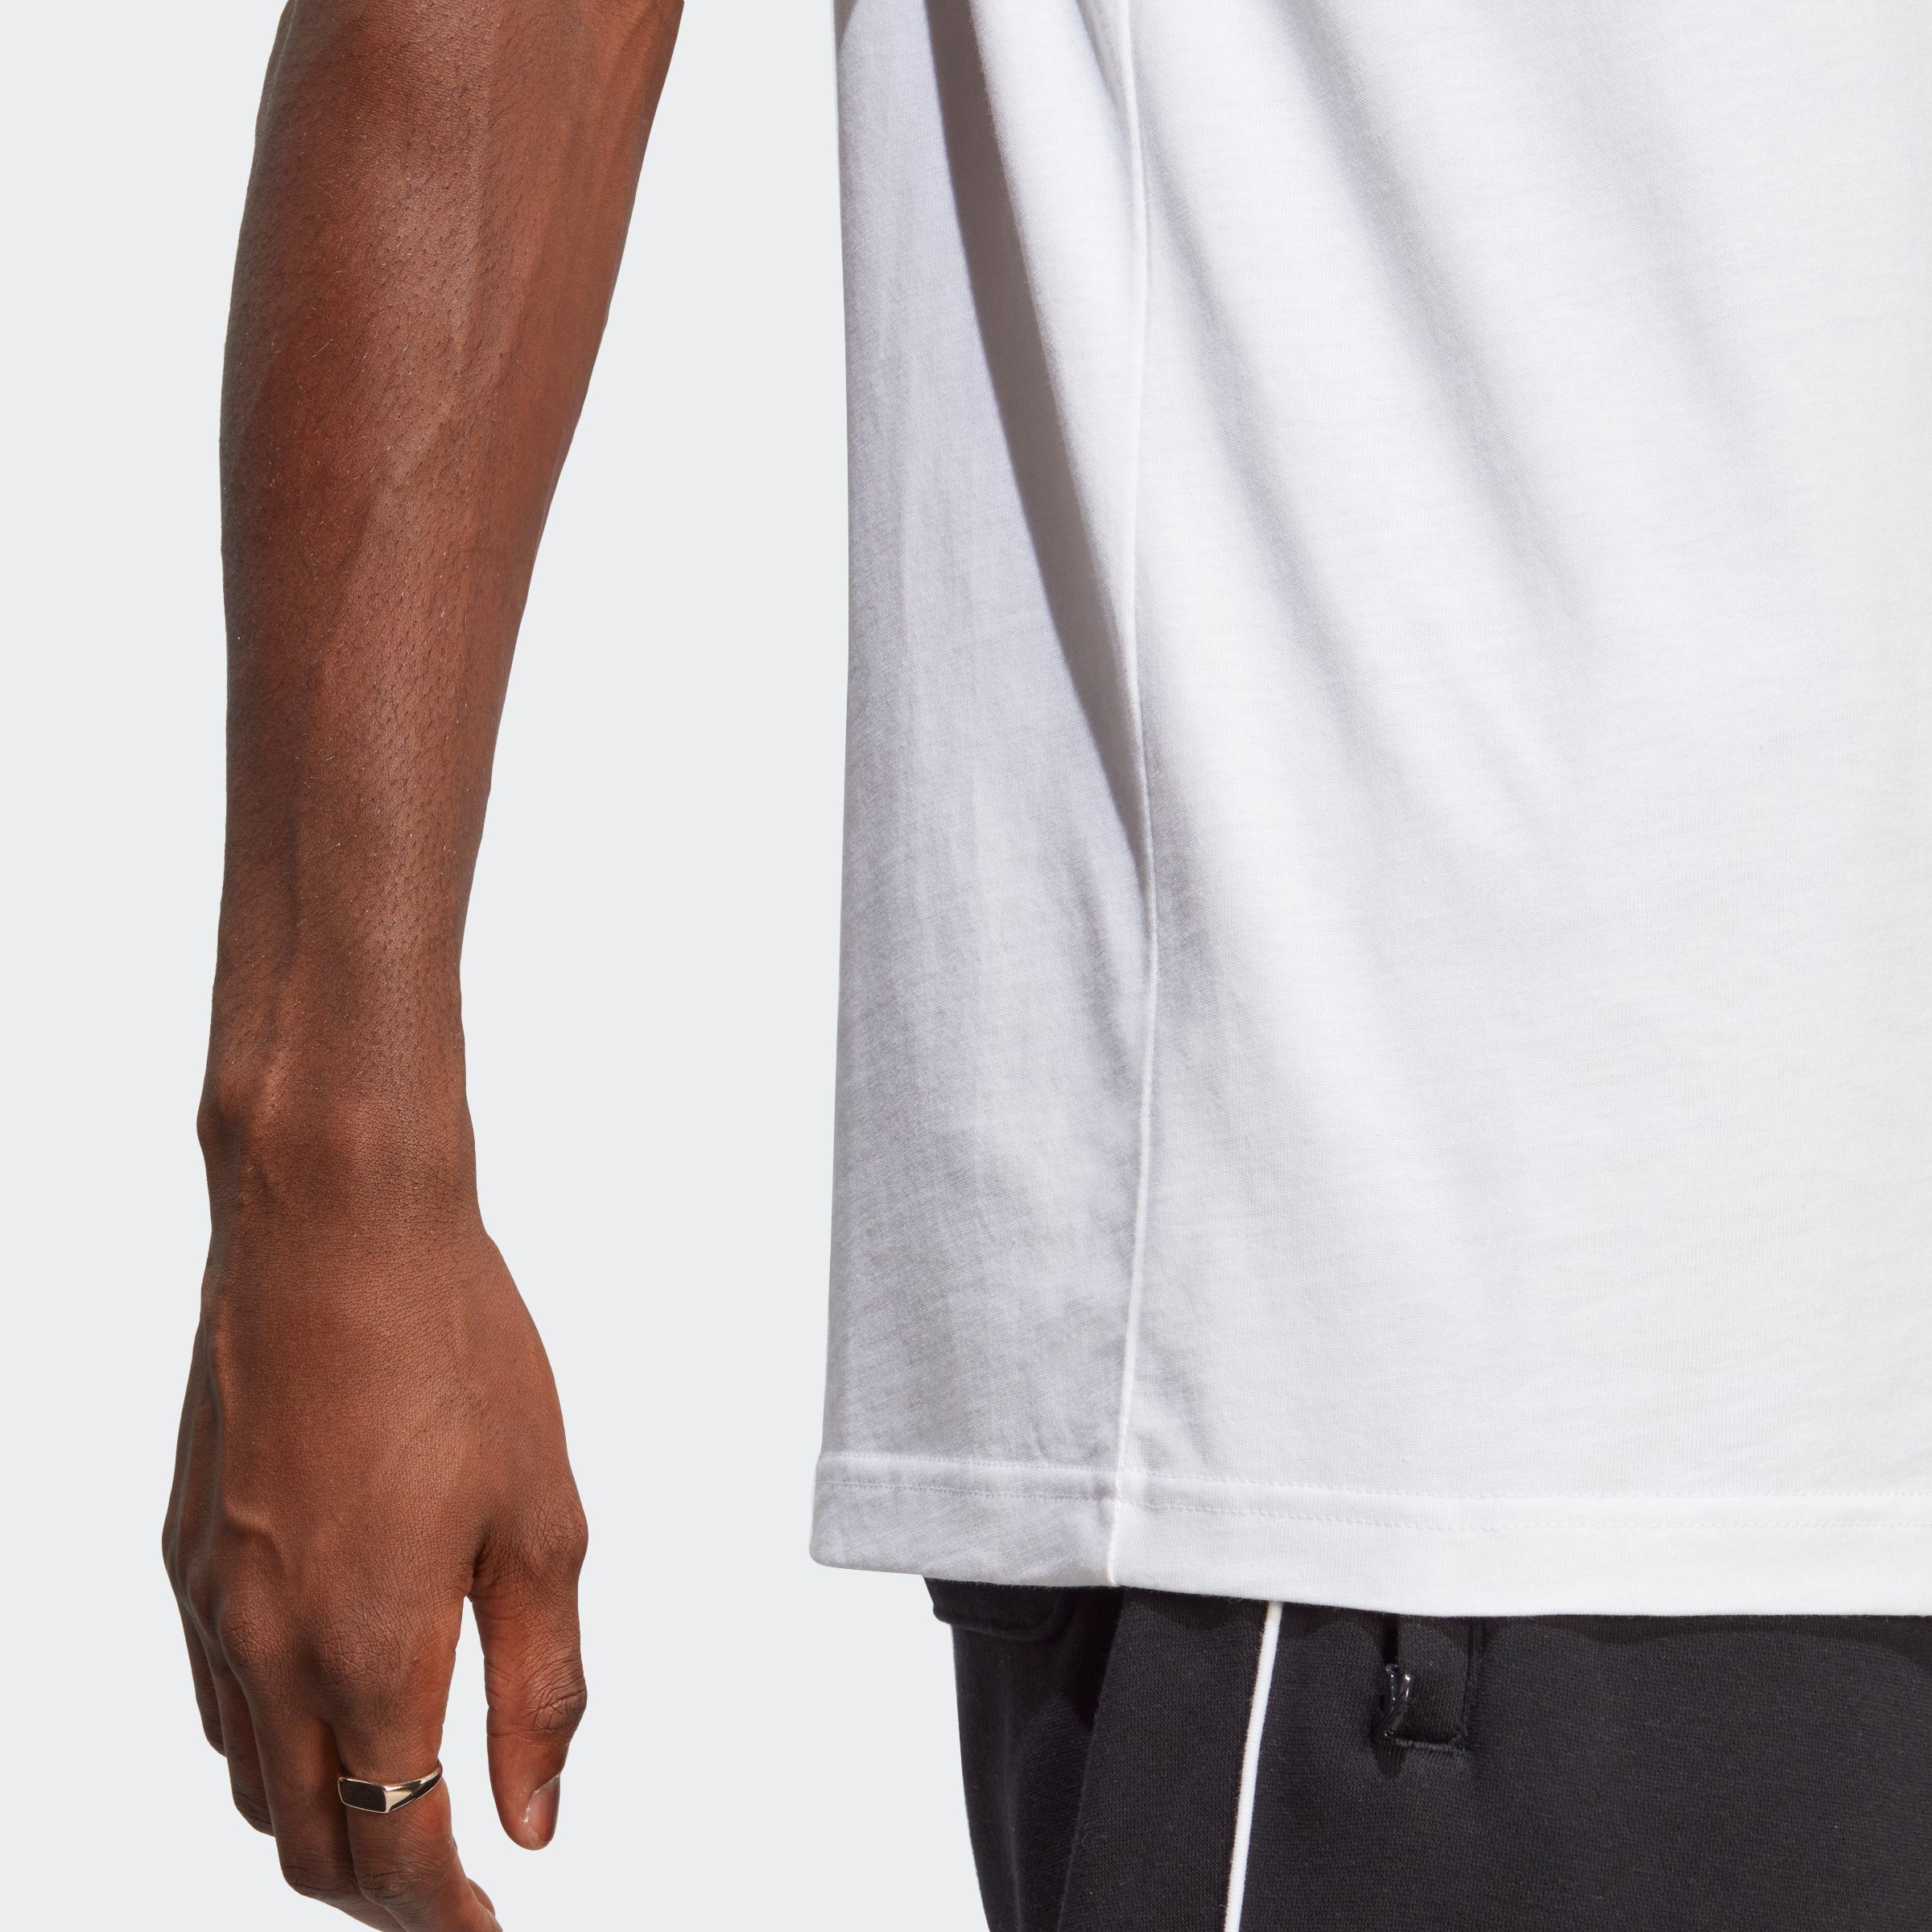 White TREFOIL adidas CLASSICS T-Shirt Black ADICOLOR / Originals